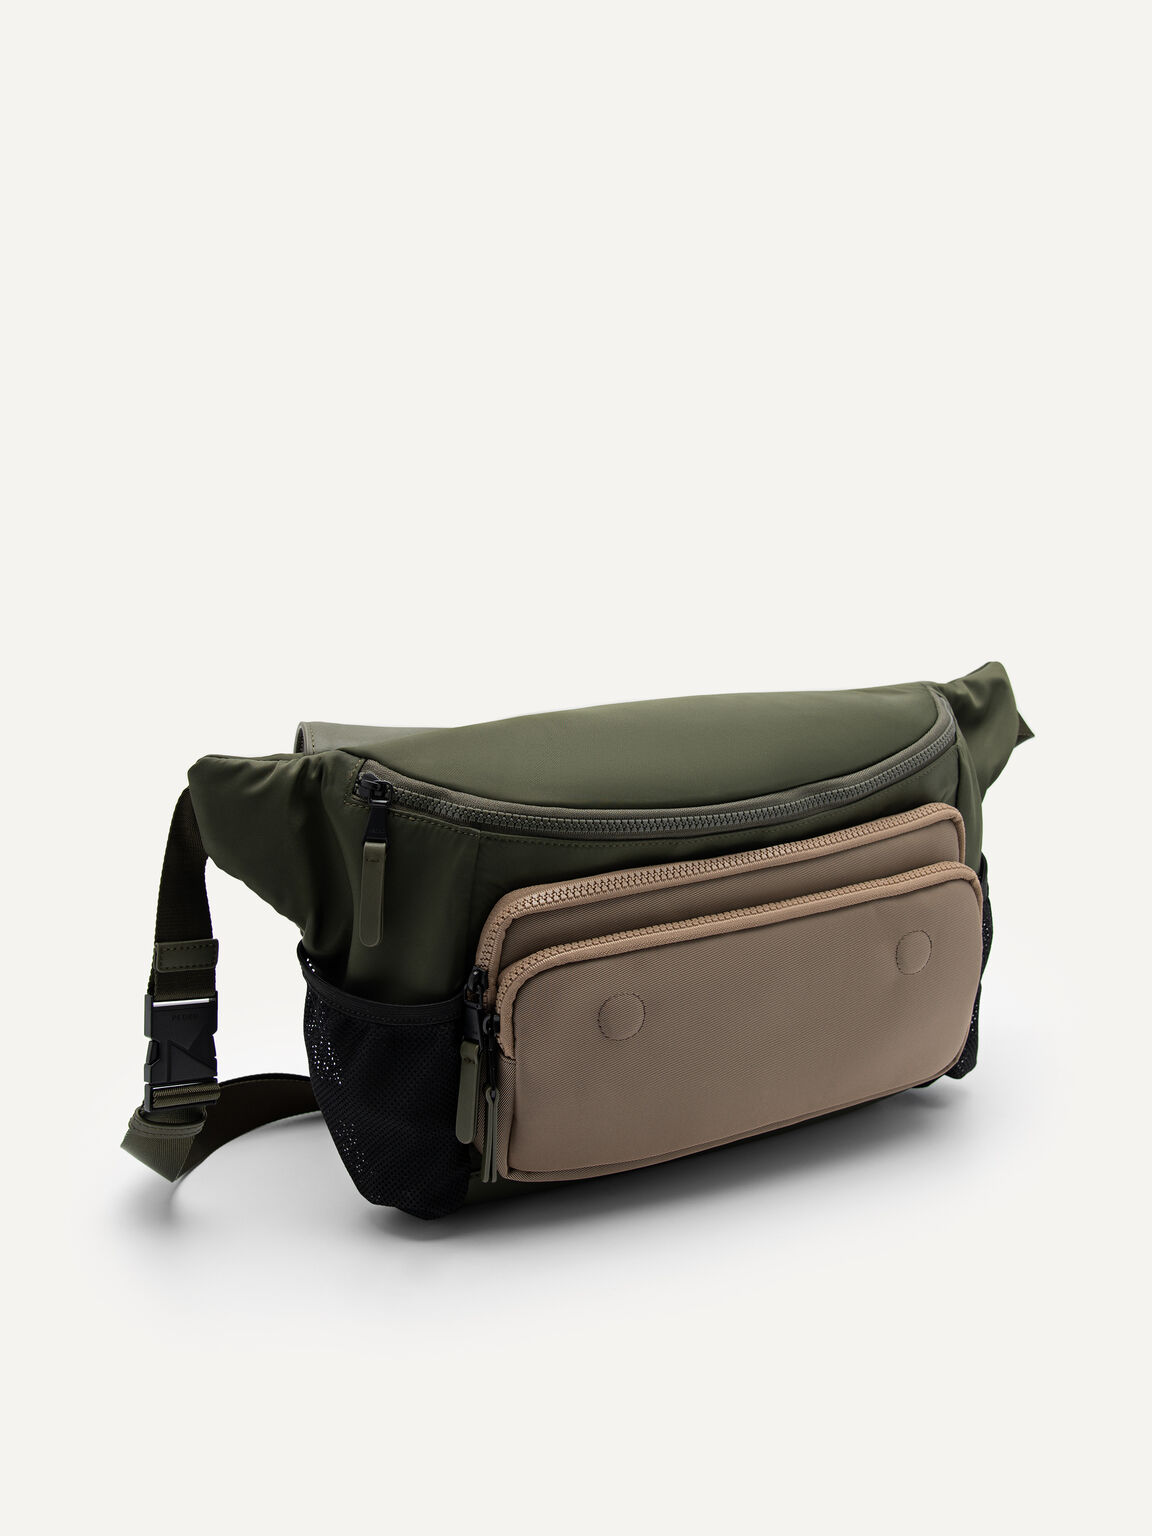 Owen Messenger Bag, Military Green